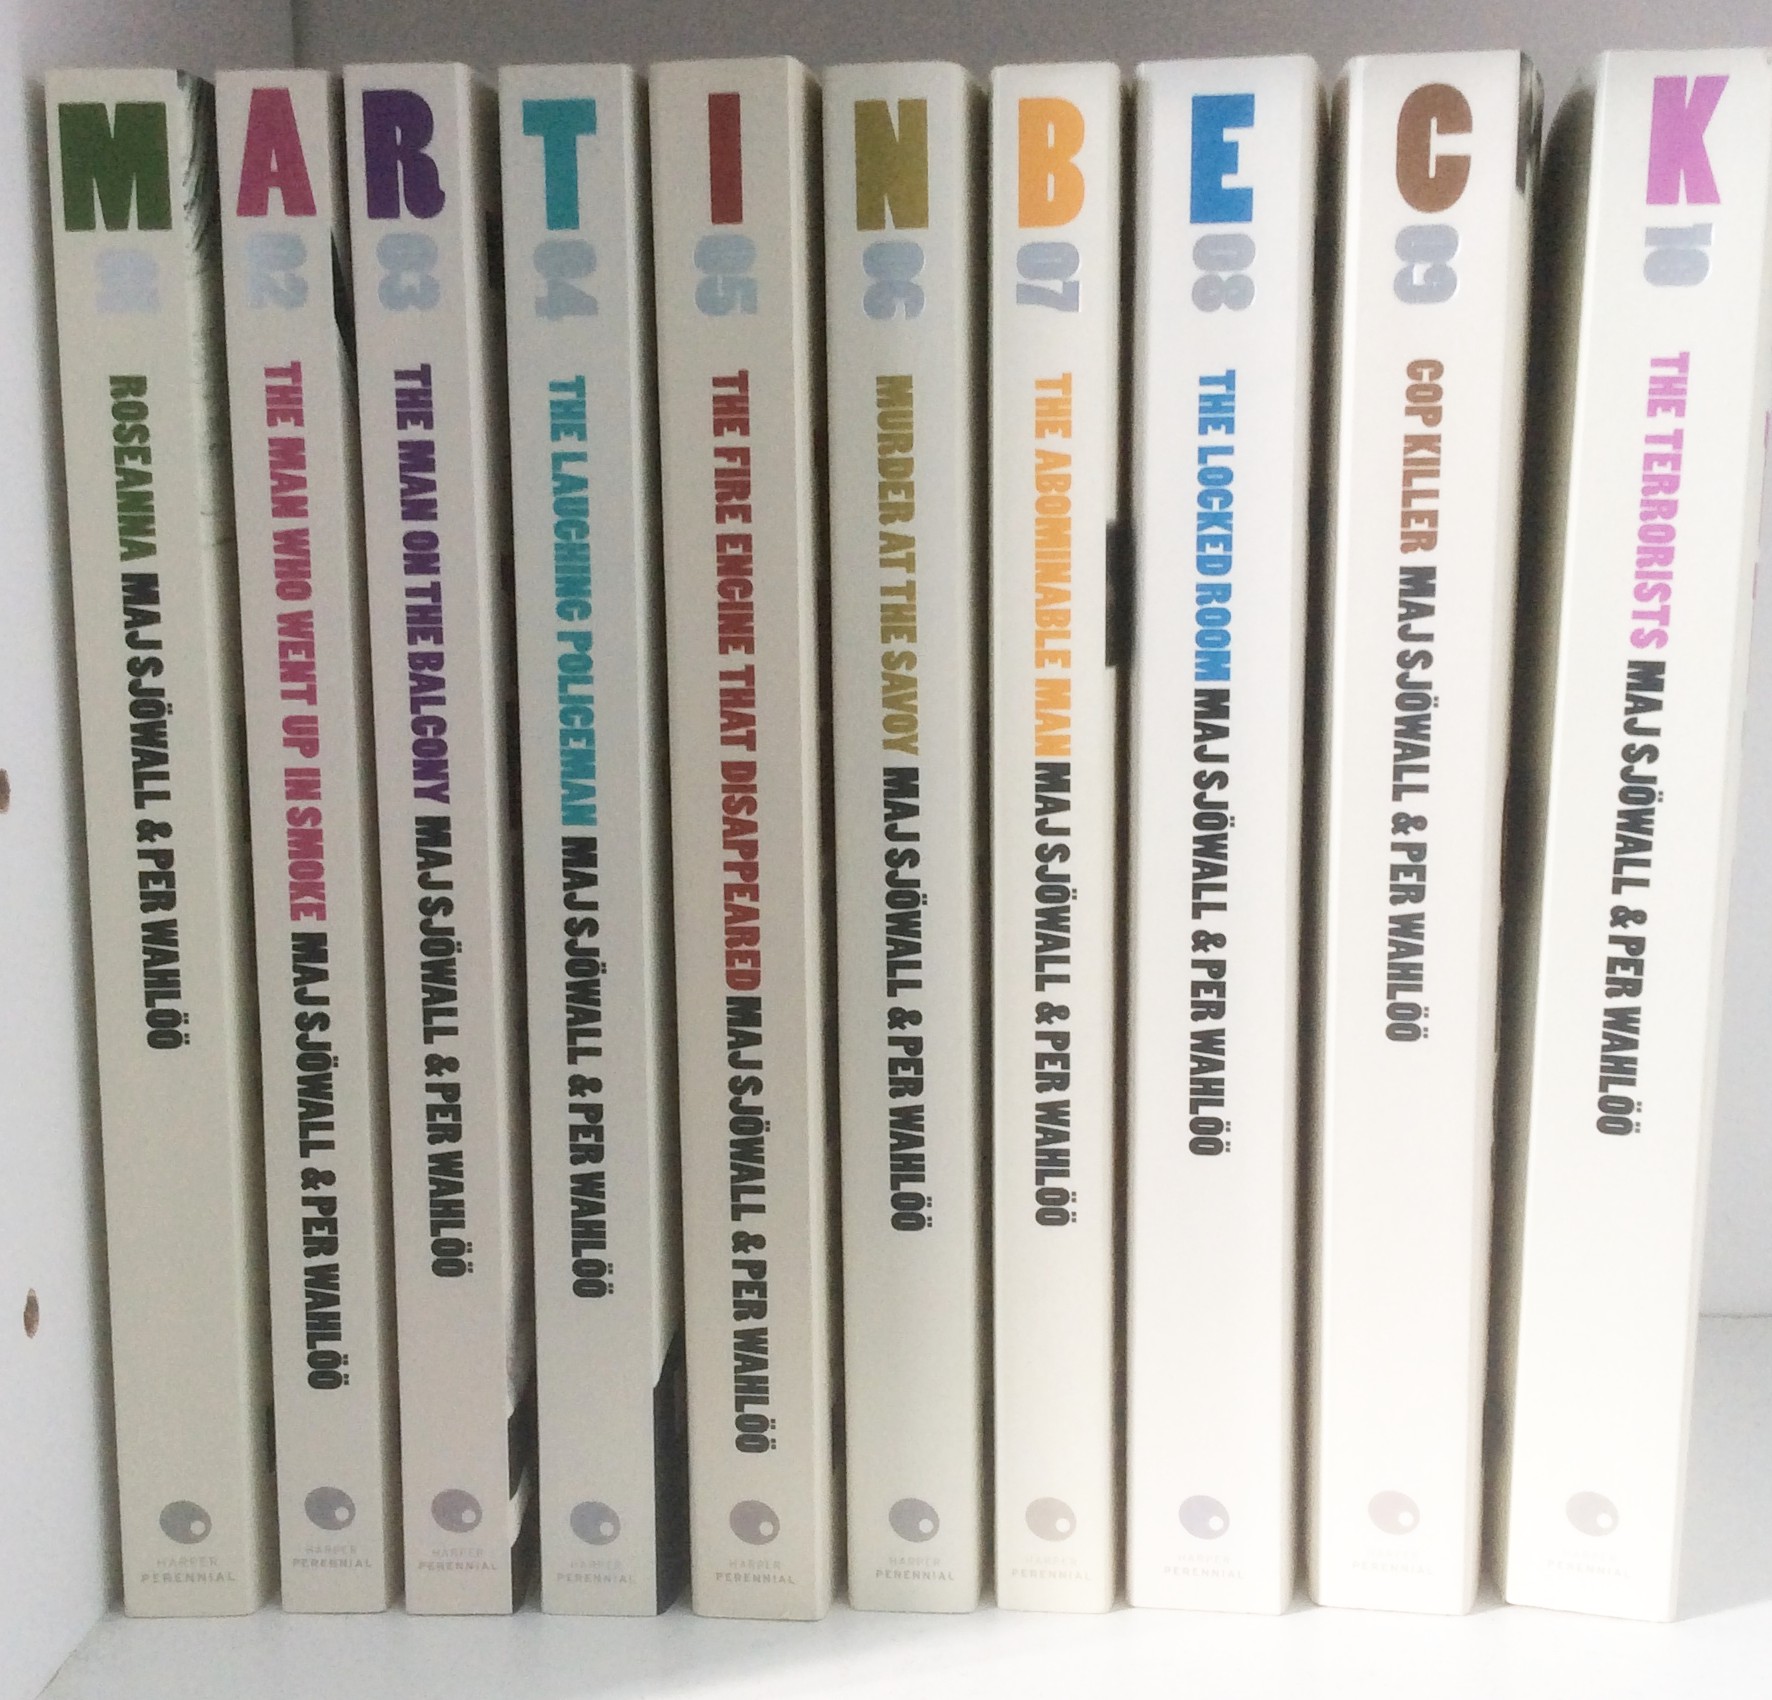 martin beck | Kaggsy's Bookish Ramblings